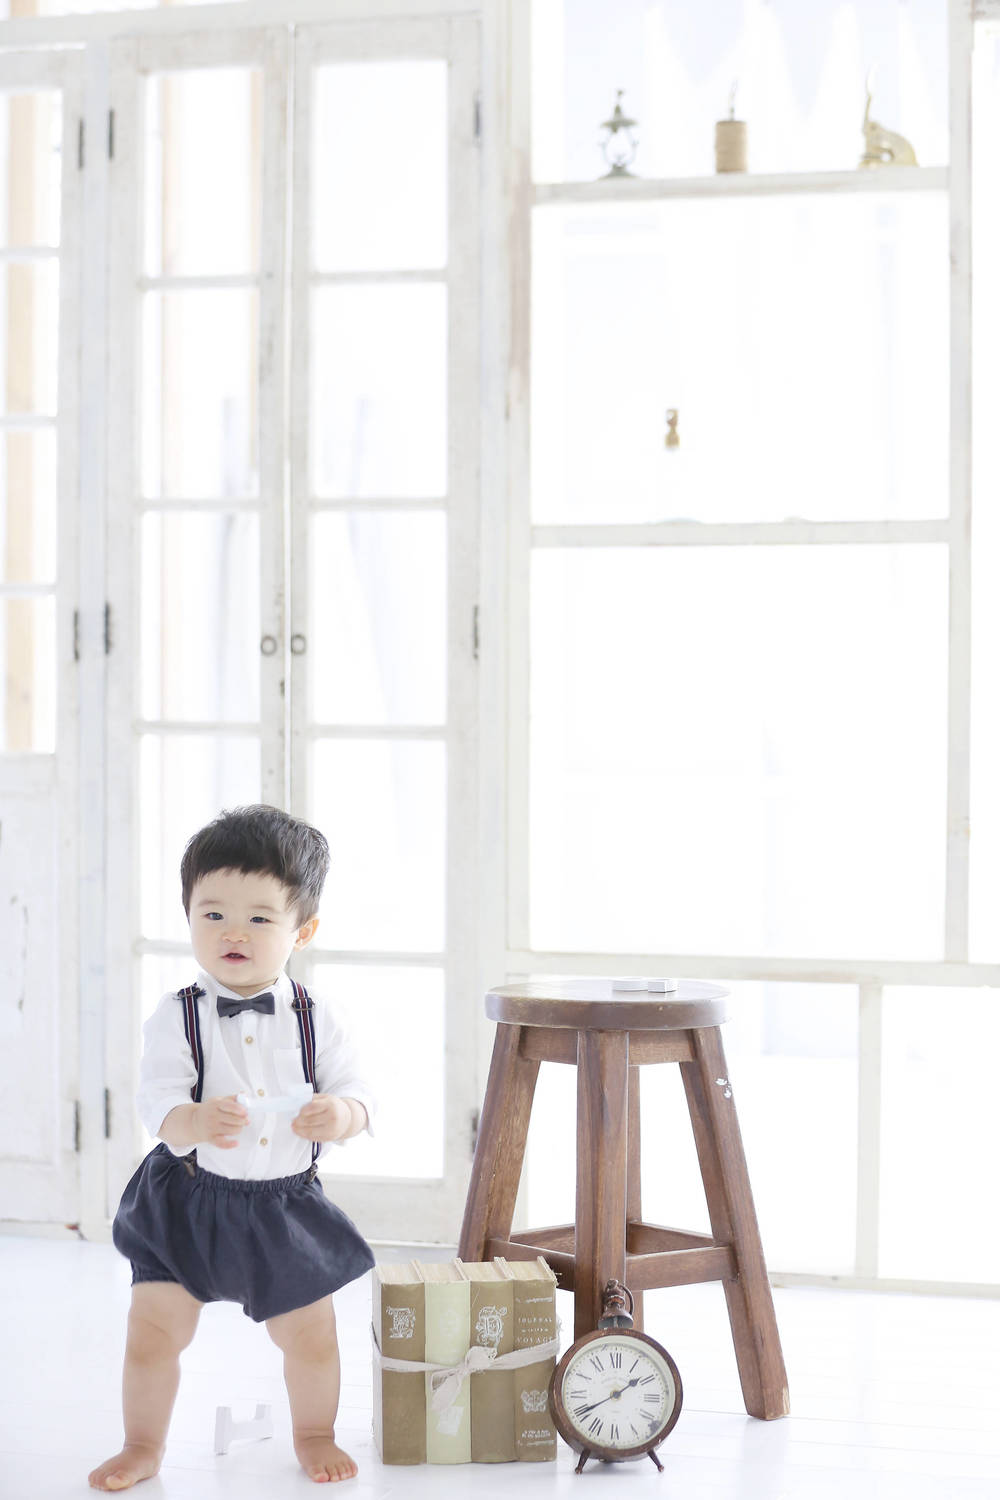 1歳のバースデーフォトはライフスタジオ名古屋へ おすすめのショット紹介 Nagoyablog 子供から家族まで自然でおしゃれに残す人生の写真館 ライフスタジオ